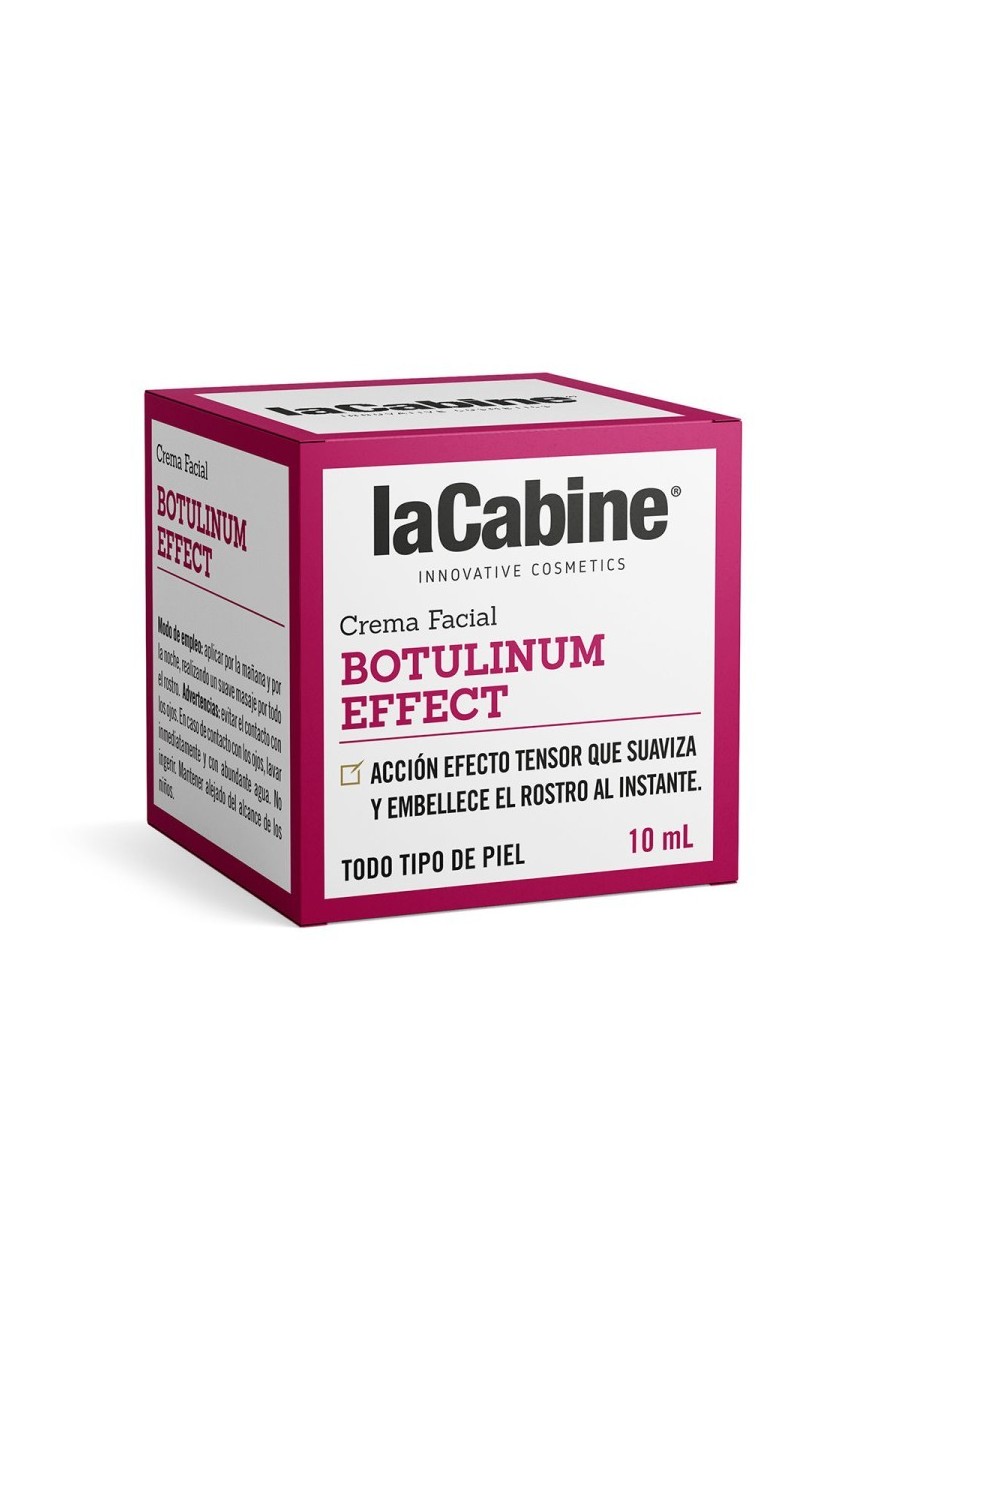 La Cabine Botulinum Effect Cream 10ml